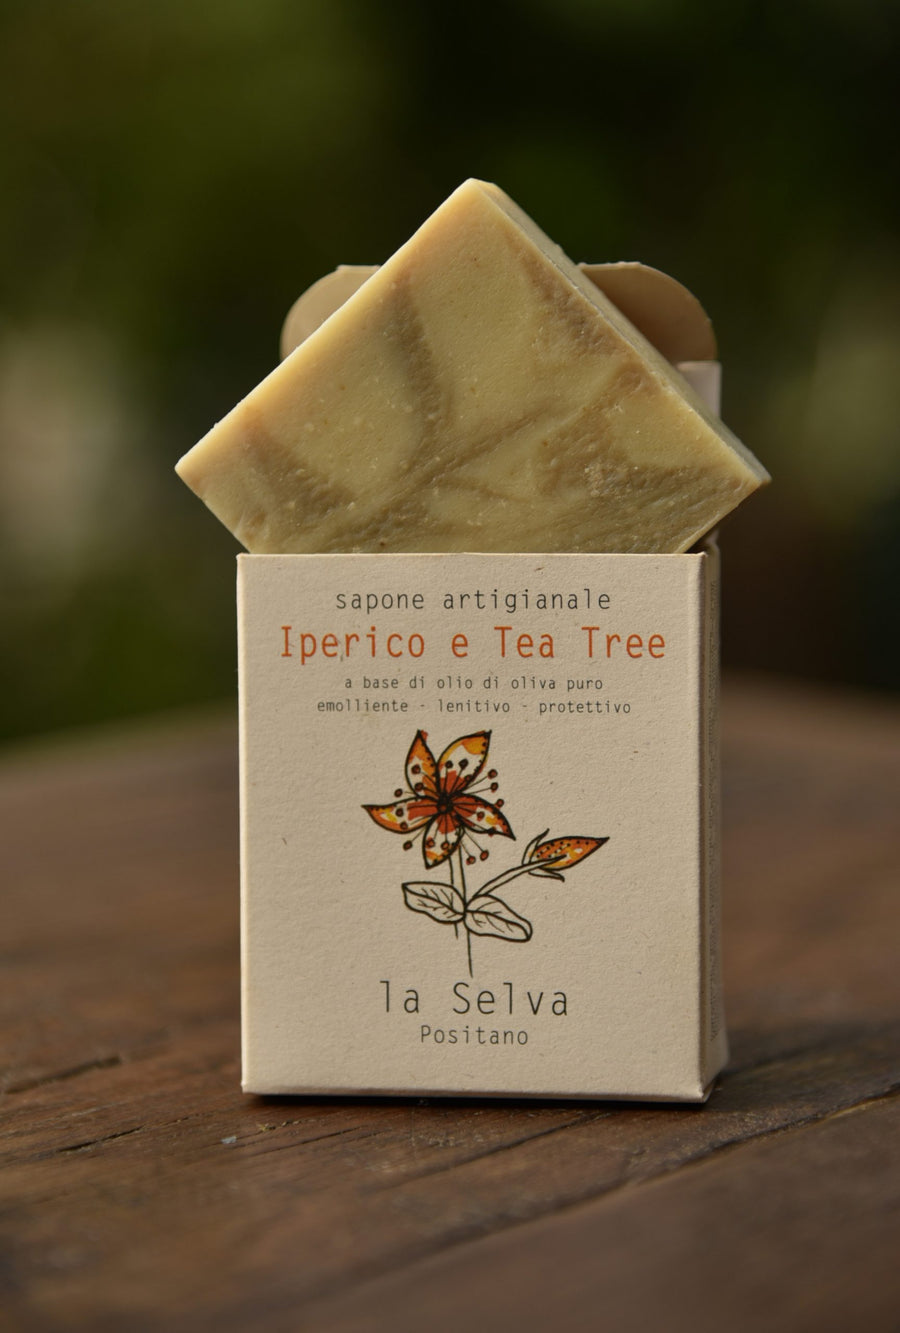 Sapone artigianale - Iperico e Tea tree - La Selva positano